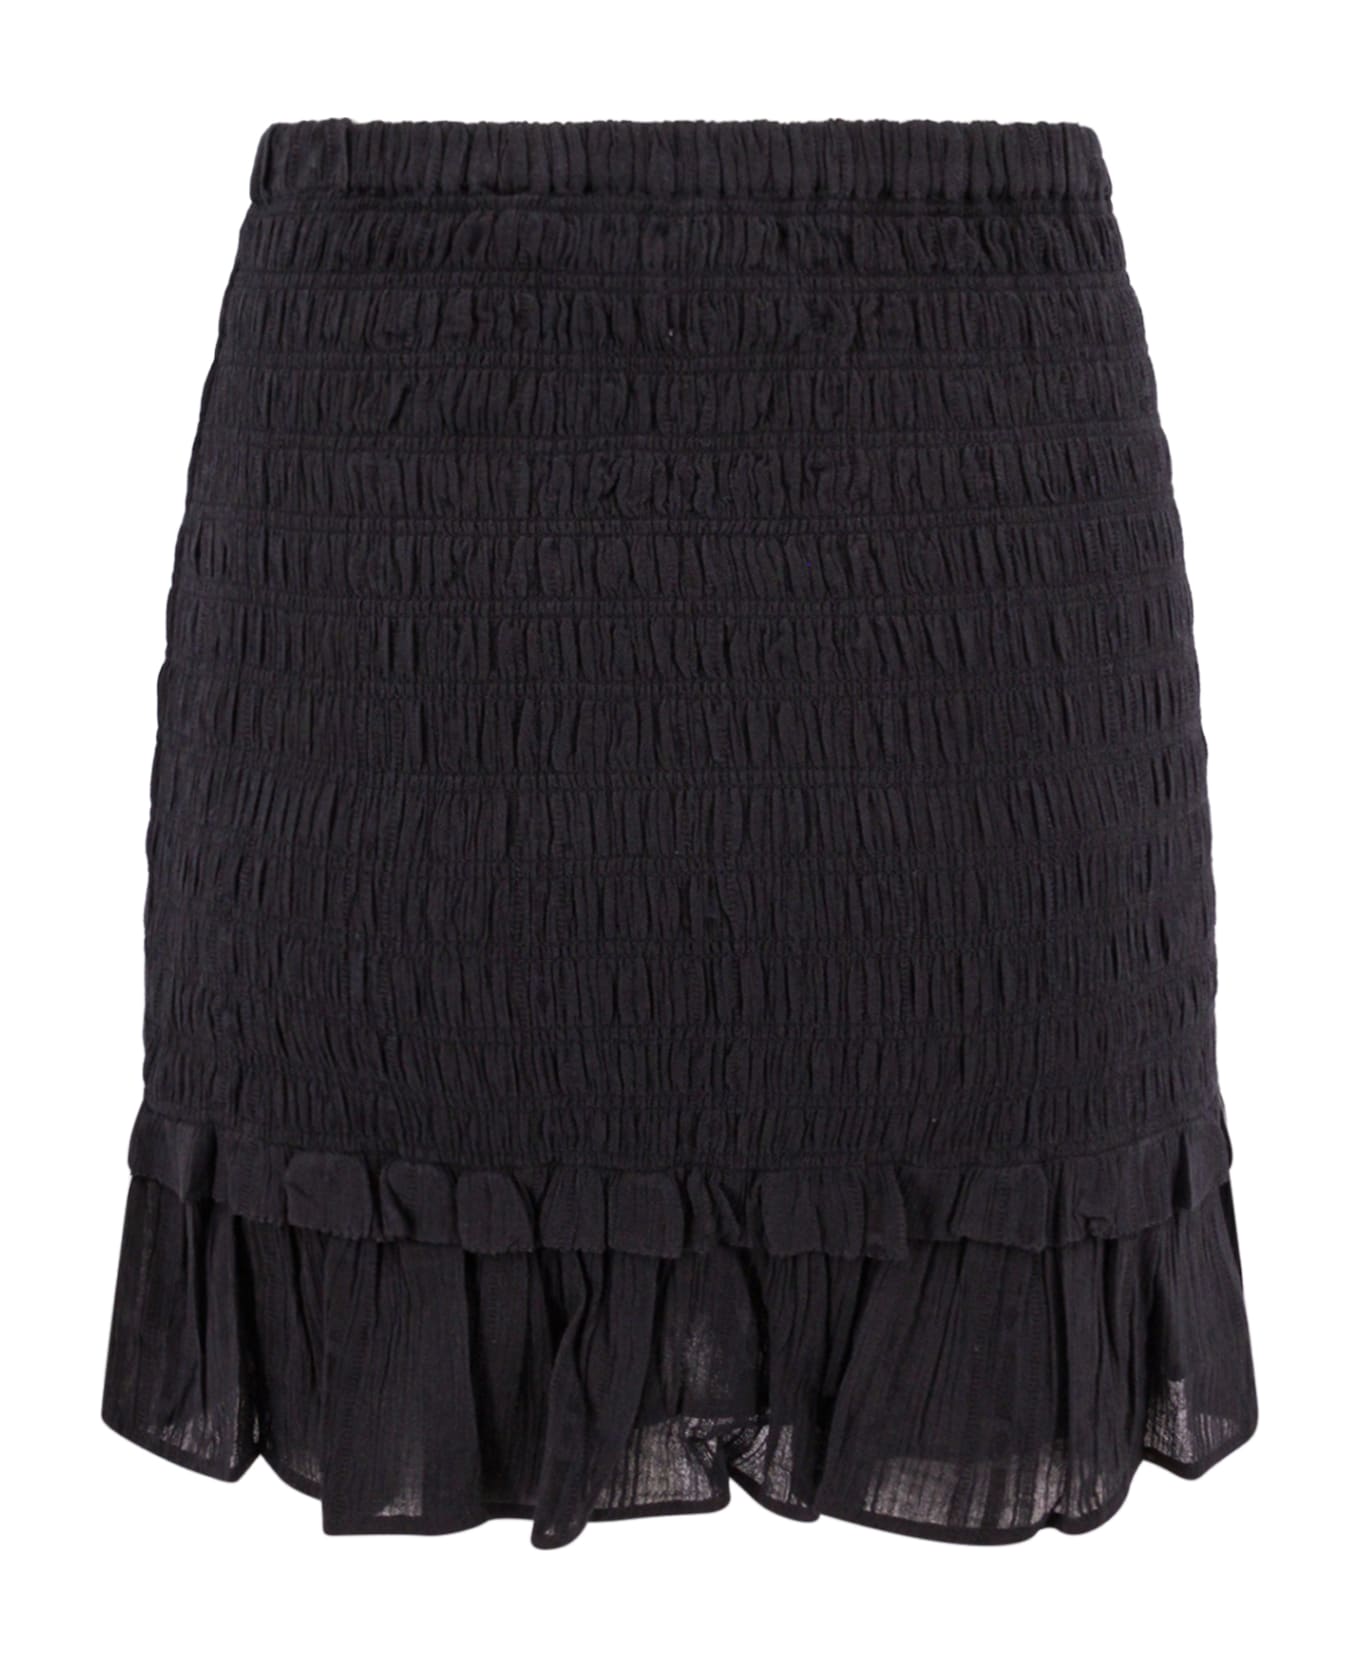 Marant Étoile Dorela Skirt - BLACK